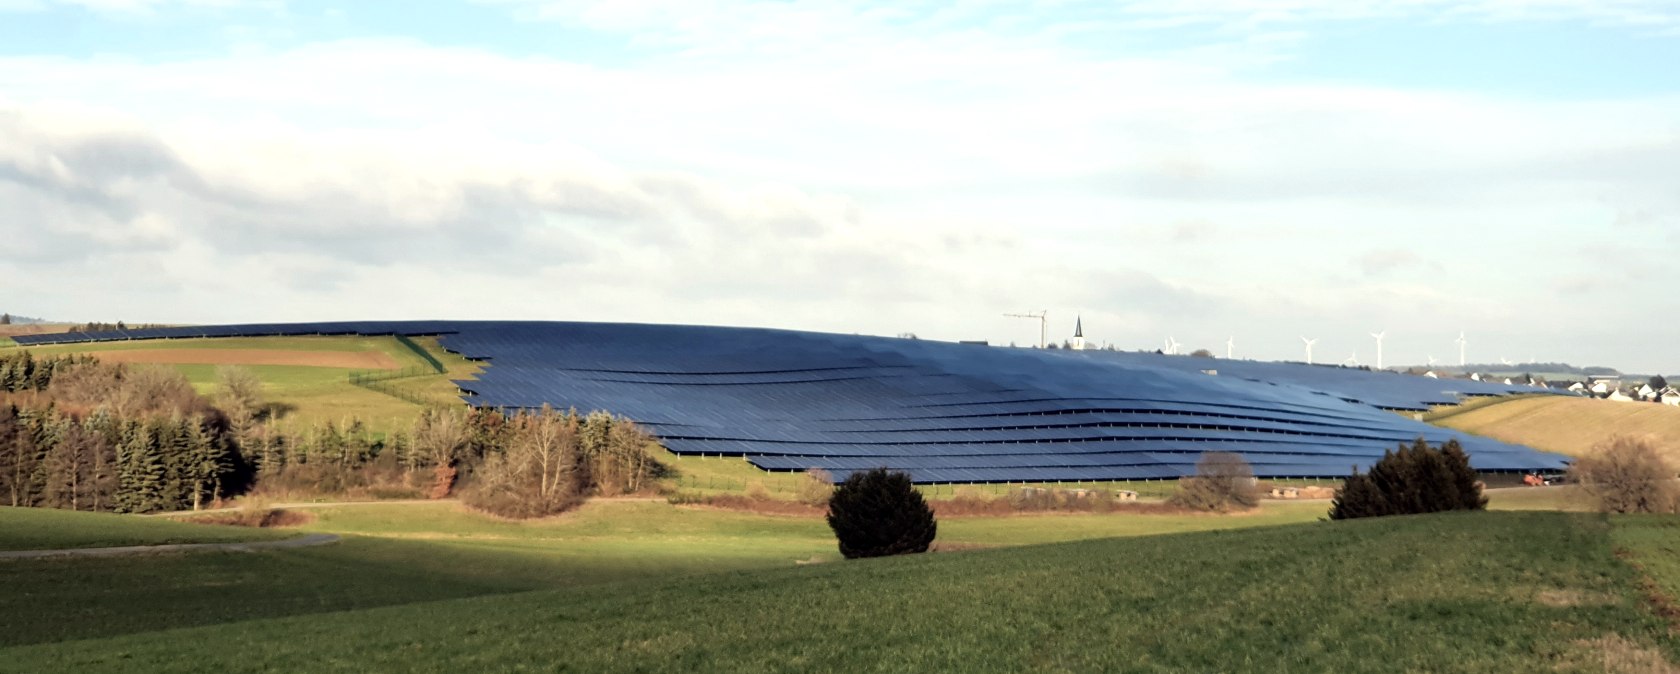 Solarfläche bei Büchel, © Kreisverwaltung Cochem-Zell